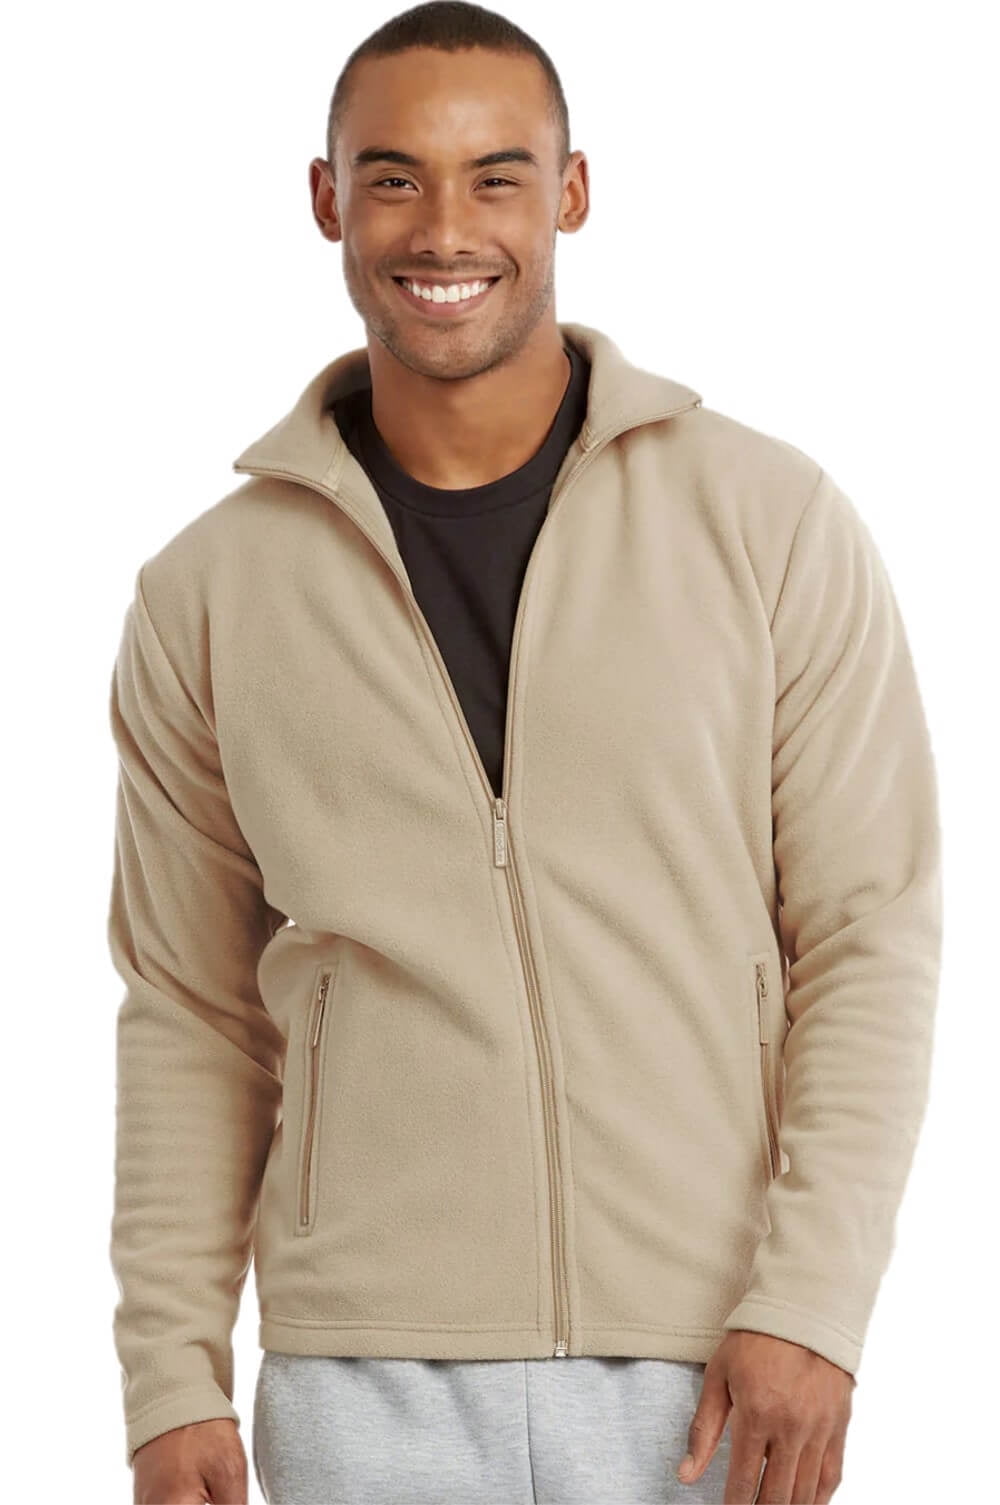 Men's Full-Zip Polar Fleece Jacket, Navy 2XL, 1 Count, 1 Pack 